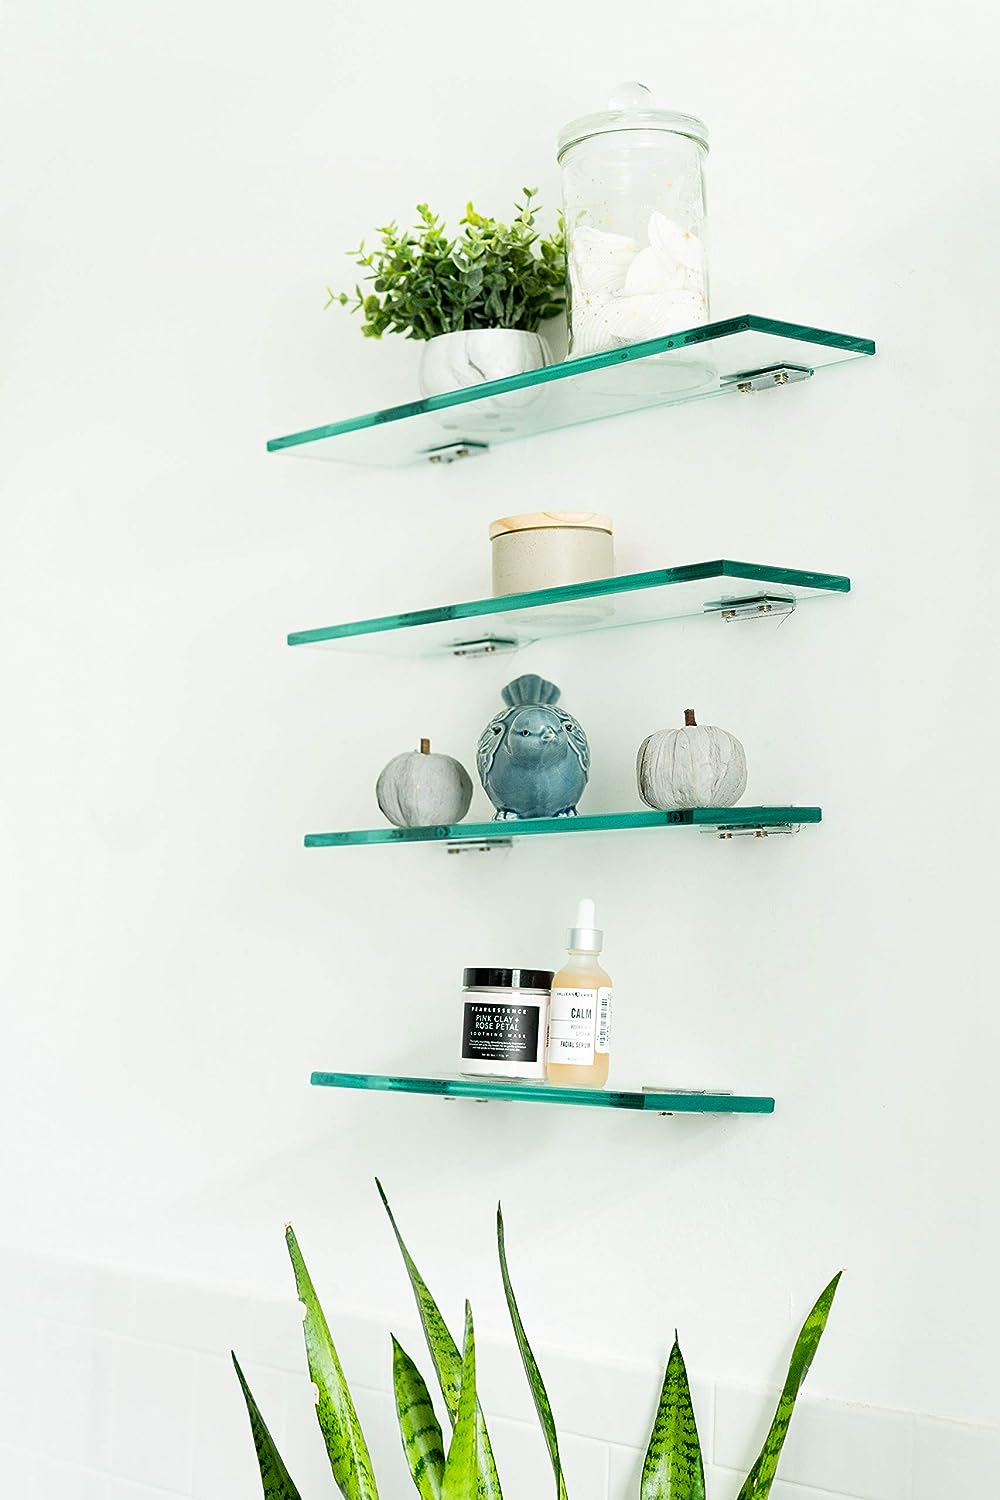 Glass Shelf